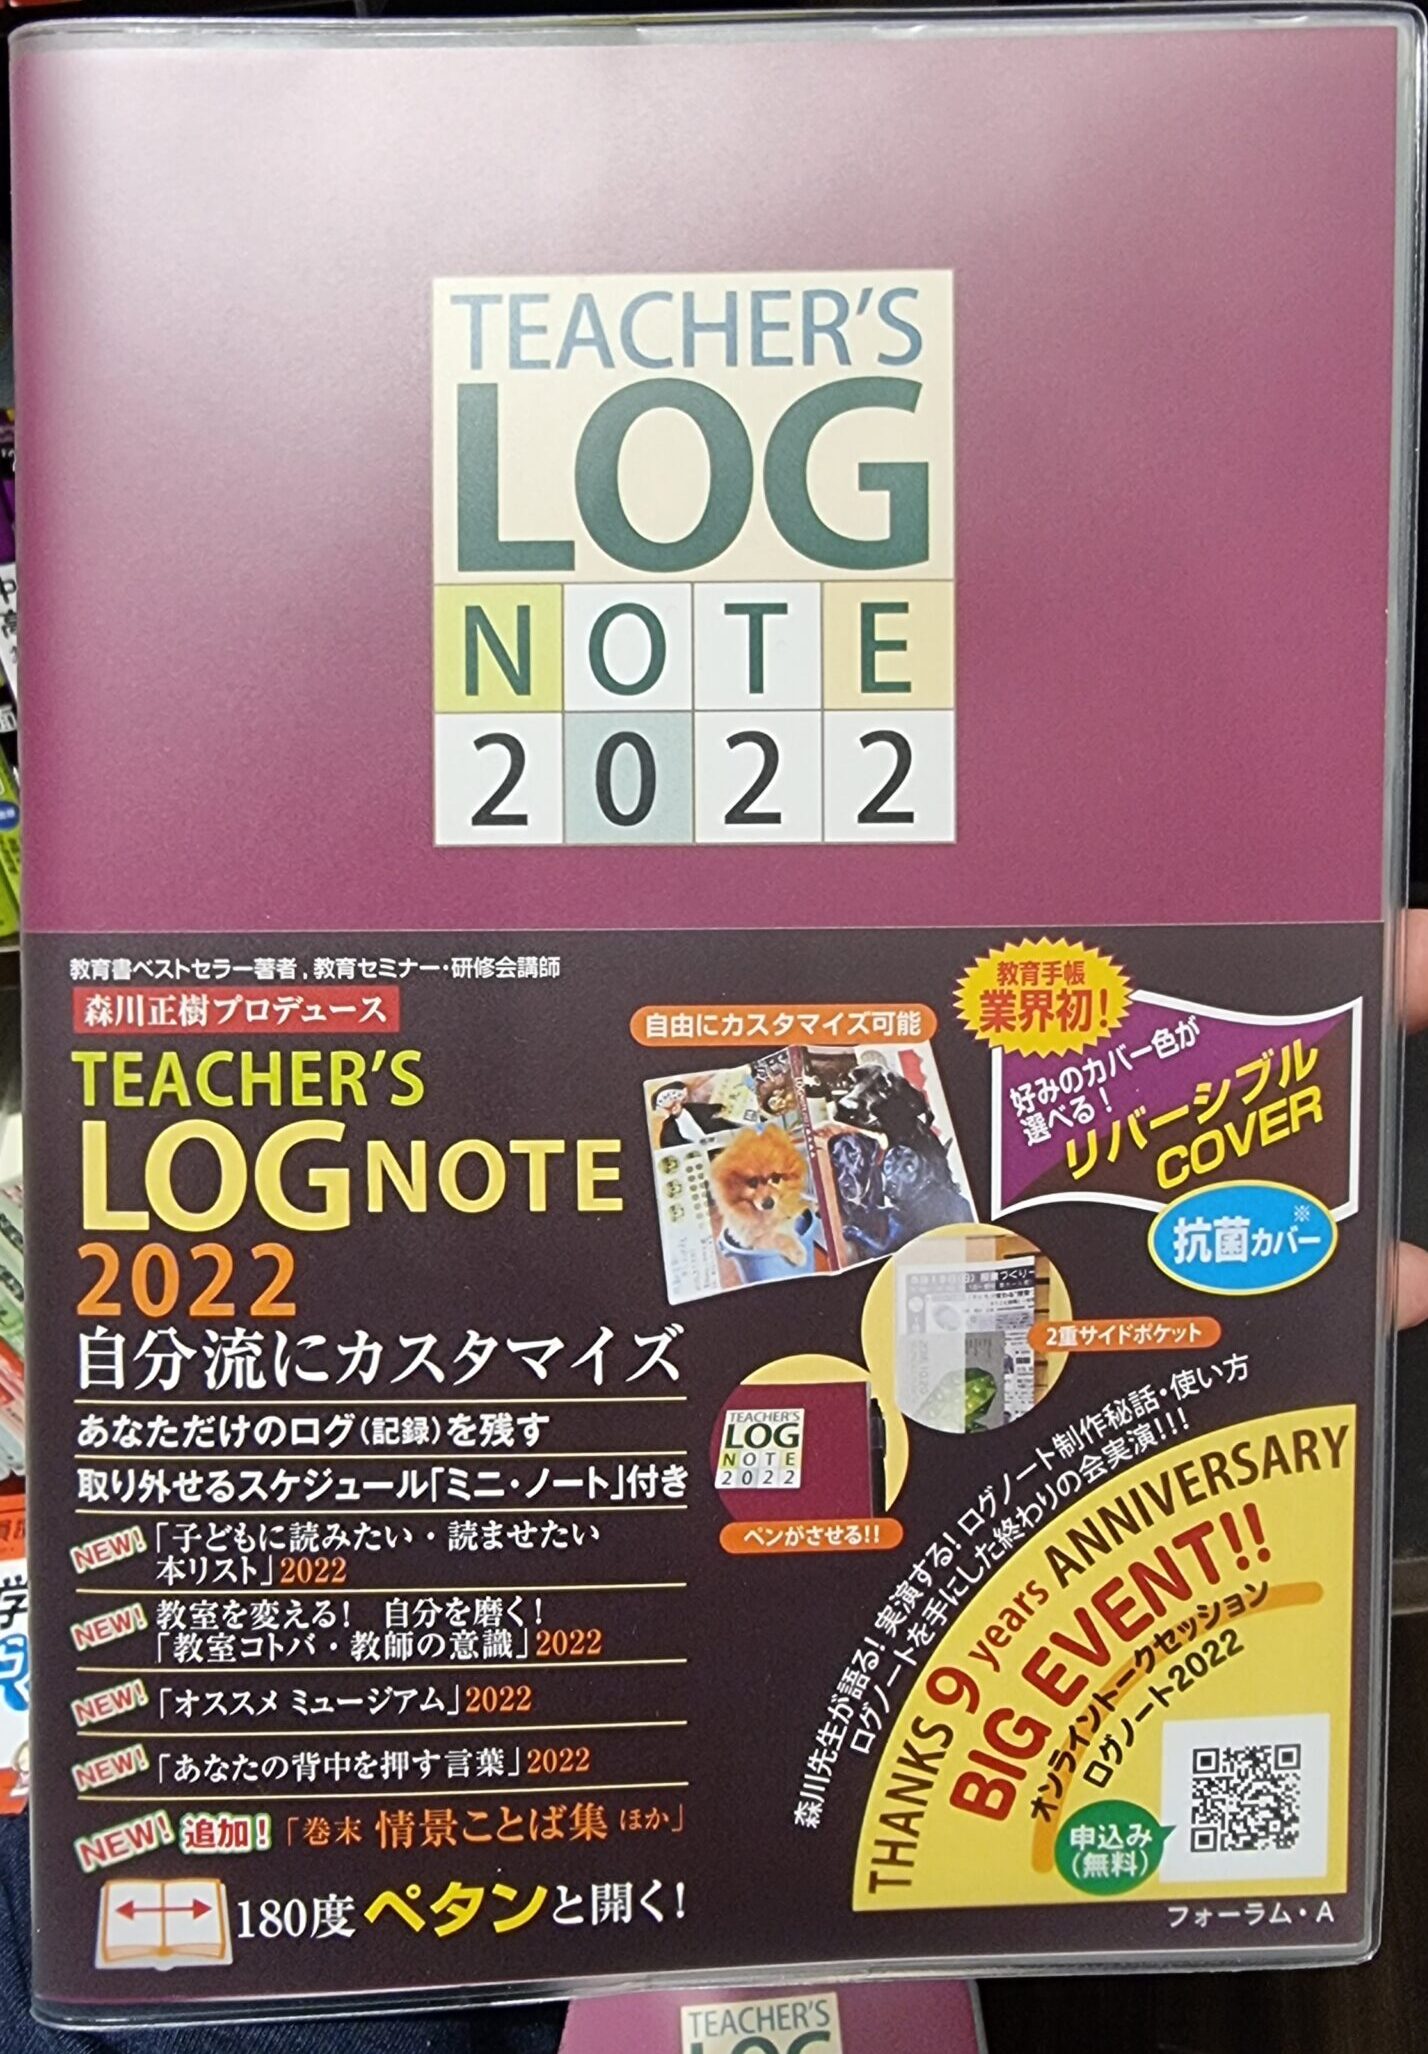 教師専用手帳「ティーチャーズログノート2022」